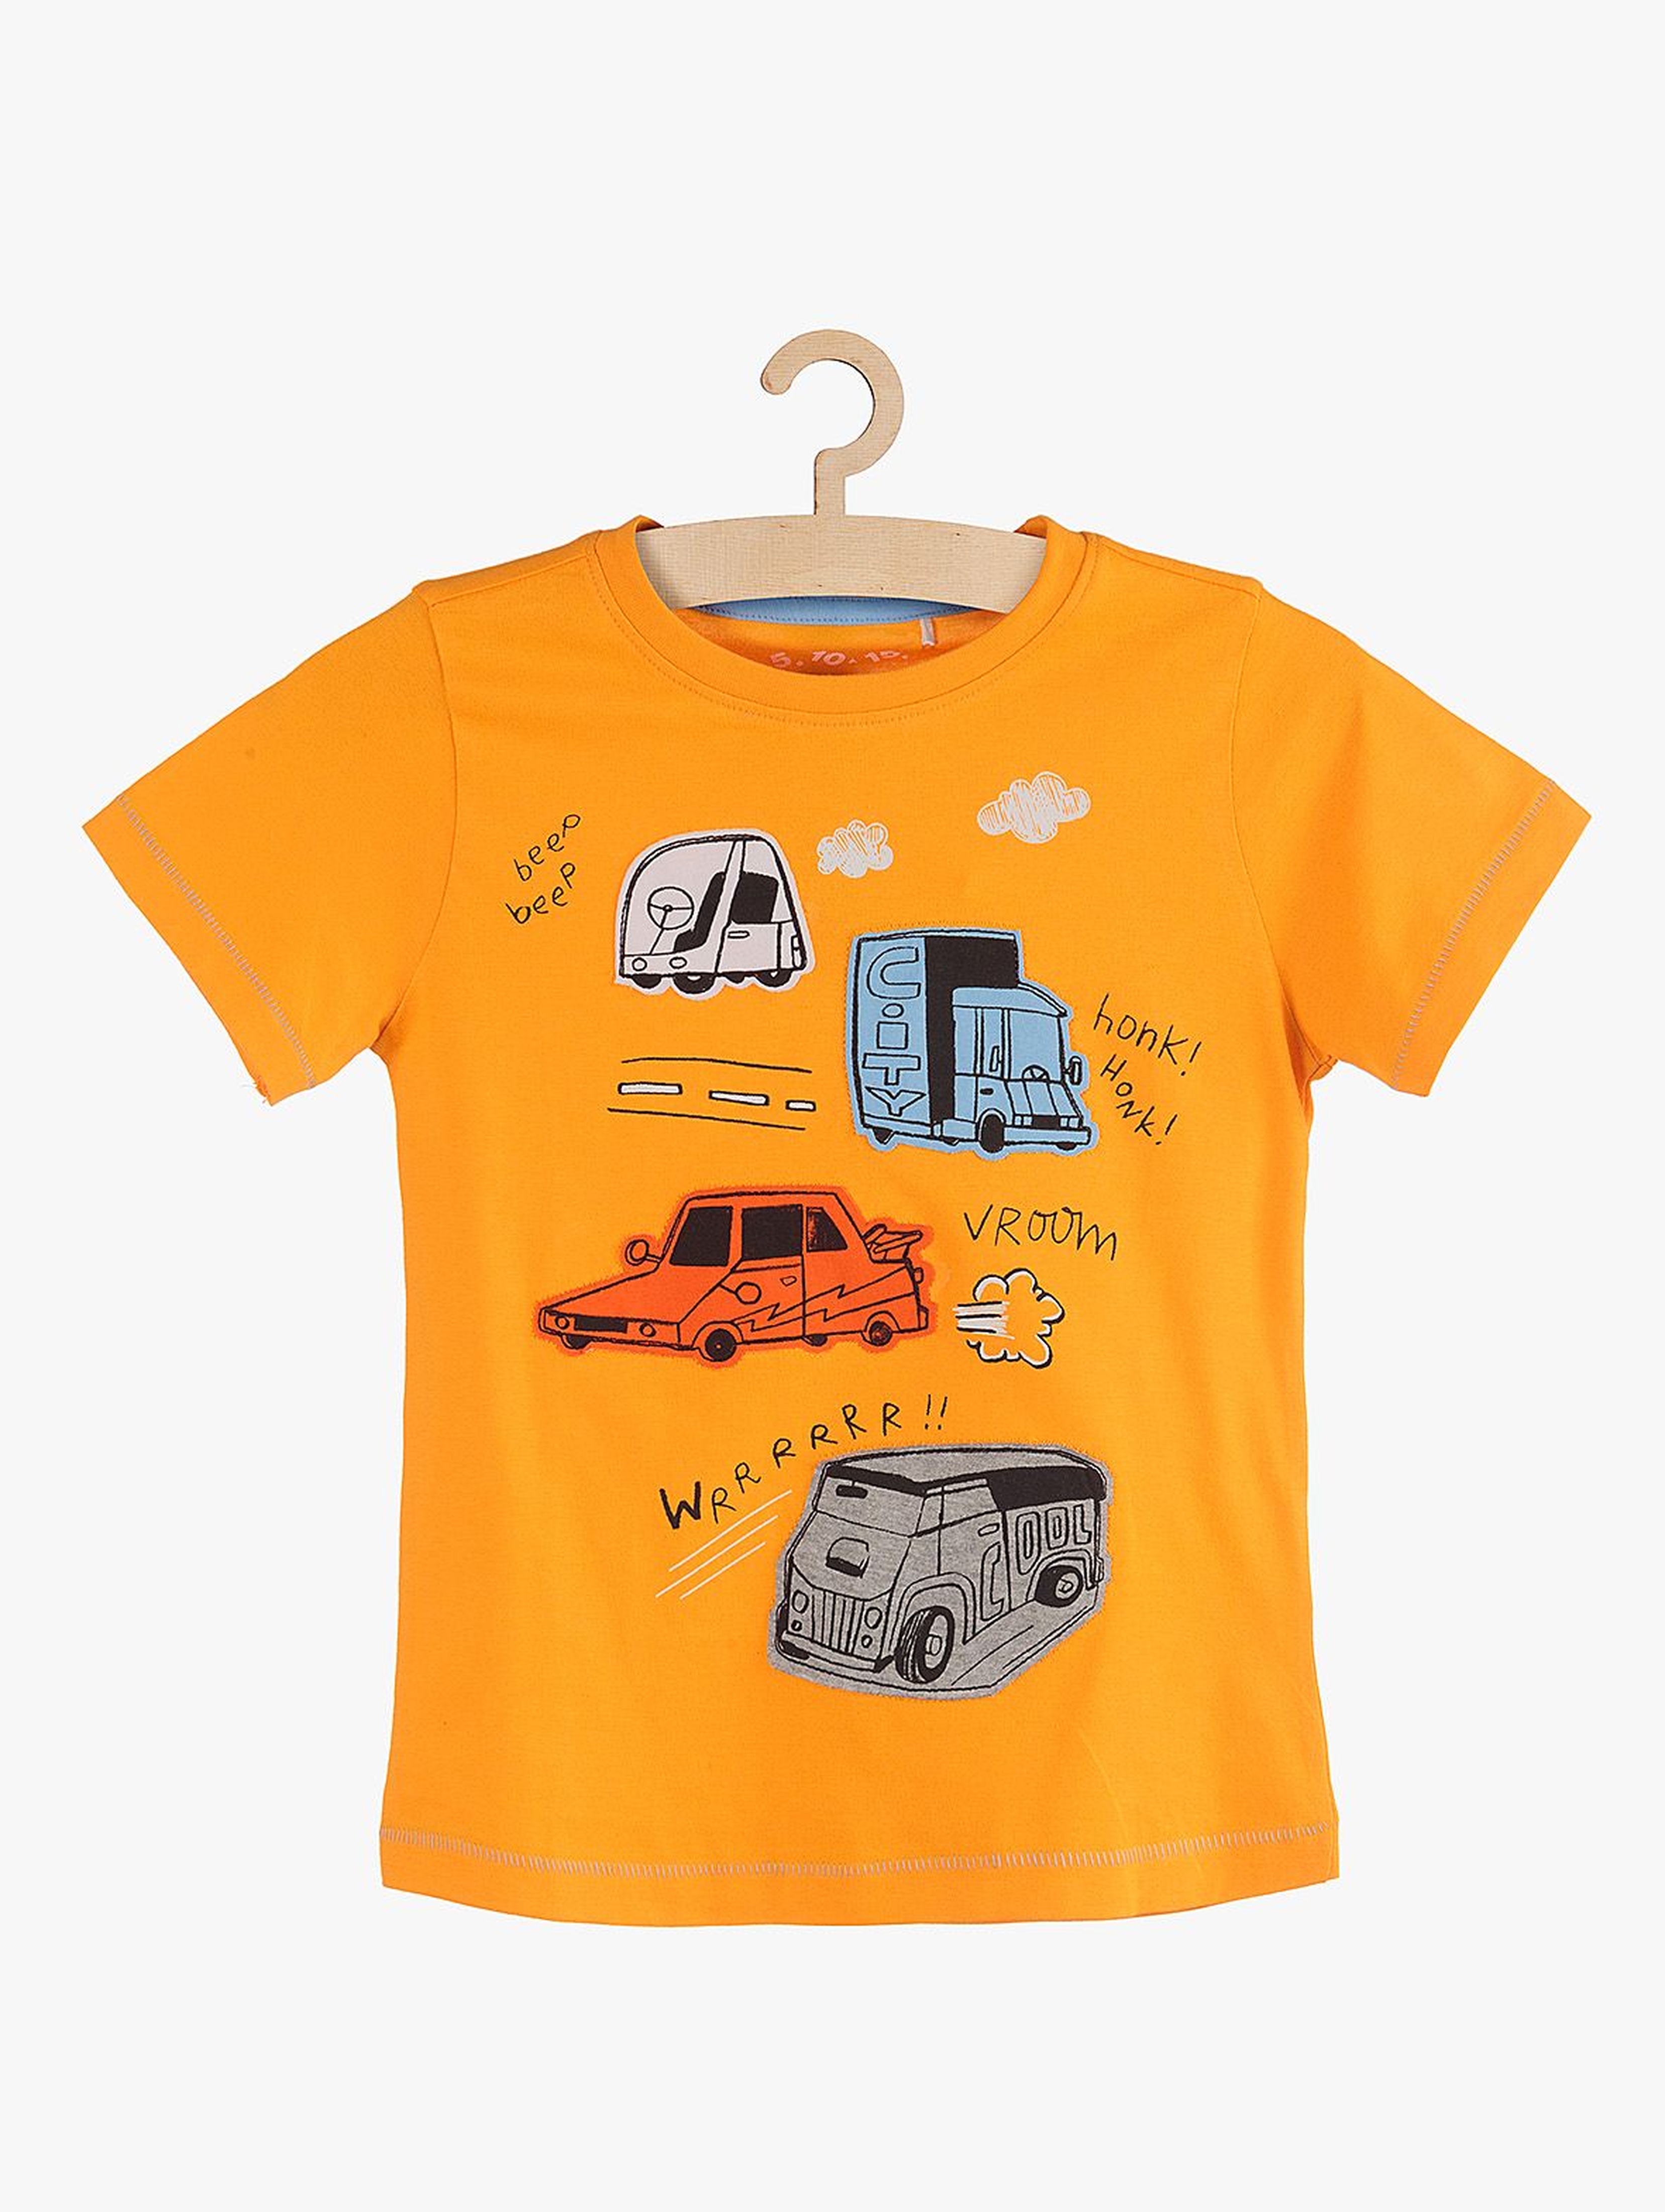 T-shirt chłopięcy pomarańczowy z autami